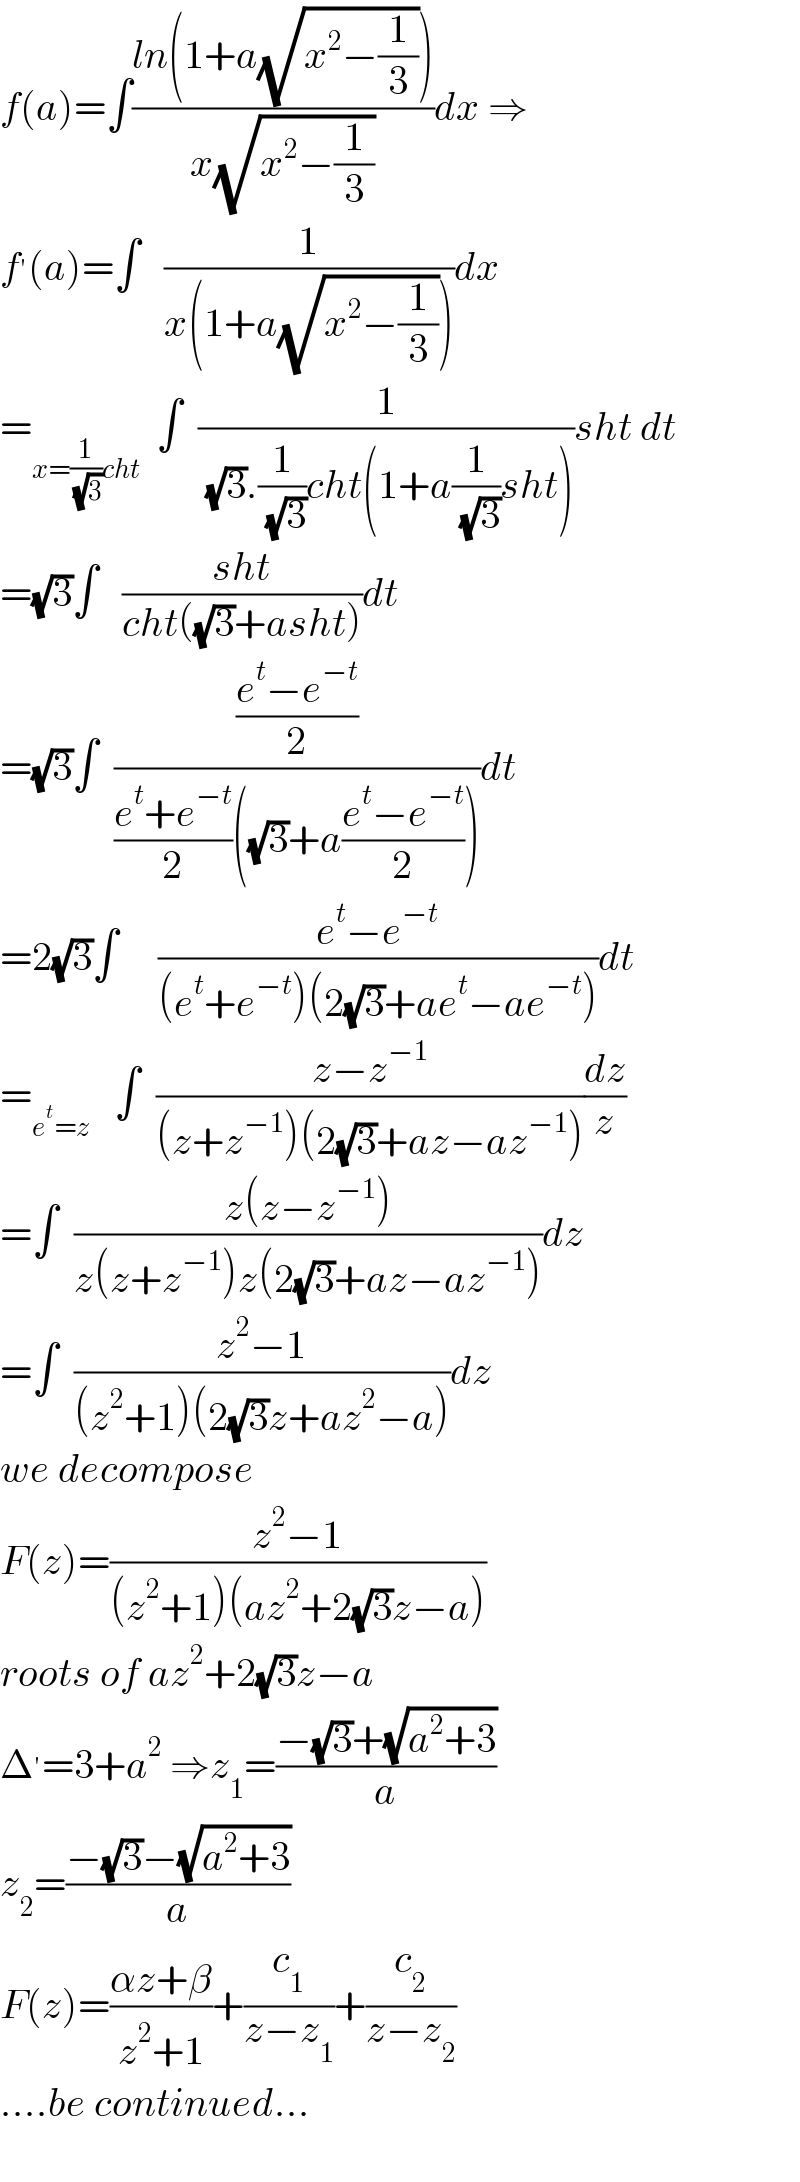 f(a)=∫((ln(1+a(√(x^2 −(1/3)))))/(x(√(x^2 −(1/3)))))dx ⇒  f^′ (a)=∫   (1/(x(1+a(√(x^2 −(1/3))))))dx  =_(x=(1/( (√3)))cht)   ∫  (1/( (√3).(1/( (√3)))cht(1+a(1/( (√3)))sht)))sht dt  =(√3)∫   ((sht)/(cht((√3)+asht)))dt  =(√3)∫  (((e^t −e^(−t) )/2)/(((e^t +e^(−t) )/2)((√3)+a((e^t −e^(−t) )/2))))dt  =2(√3)∫     ((e^t −e^(−t) )/((e^t +e^(−t) )(2(√3)+ae^t −ae^(−t) )))dt  =_(e^t =z)    ∫  ((z−z^(−1) )/((z+z^(−1) )(2(√3)+az−az^(−1) )))(dz/z)  =∫  ((z(z−z^(−1) ))/(z(z+z^(−1) )z(2(√3)+az−az^(−1) )))dz  =∫  ((z^2 −1)/((z^2 +1)(2(√3)z+az^2 −a)))dz  we decompose  F(z)=((z^2 −1)/((z^2 +1)(az^2 +2(√3)z−a)))  roots of az^2 +2(√3)z−a  Δ^′ =3+a^2  ⇒z_1 =((−(√3)+(√(a^2 +3)))/a)  z_2 =((−(√3)−(√(a^2 +3)))/a)  F(z)=((αz+β)/(z^2 +1))+(c_1 /(z−z_1 ))+(c_2 /(z−z_2 ))  ....be continued...    